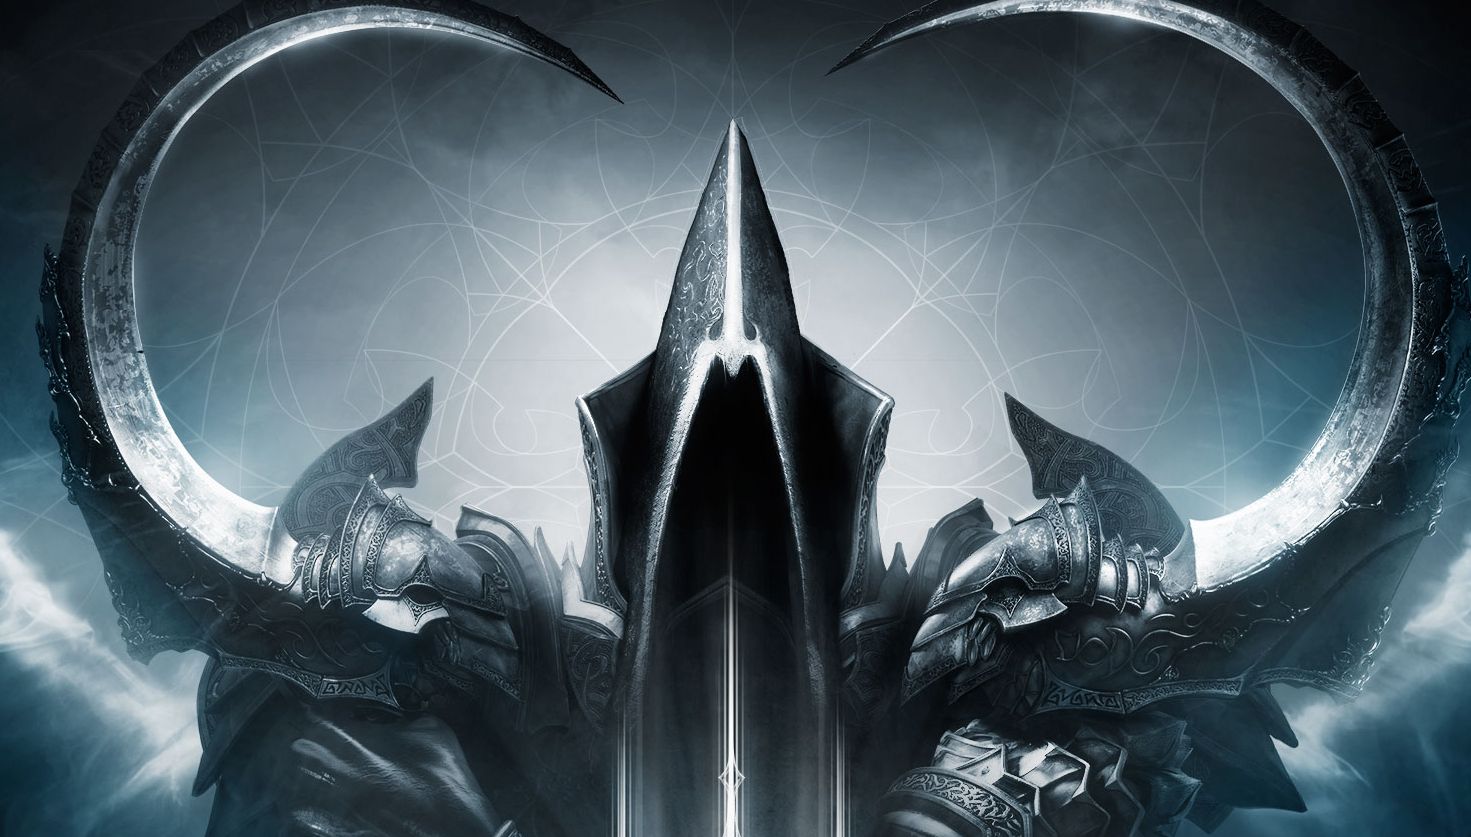 Diablo III Reaper of Souls - Patch 2.1.0